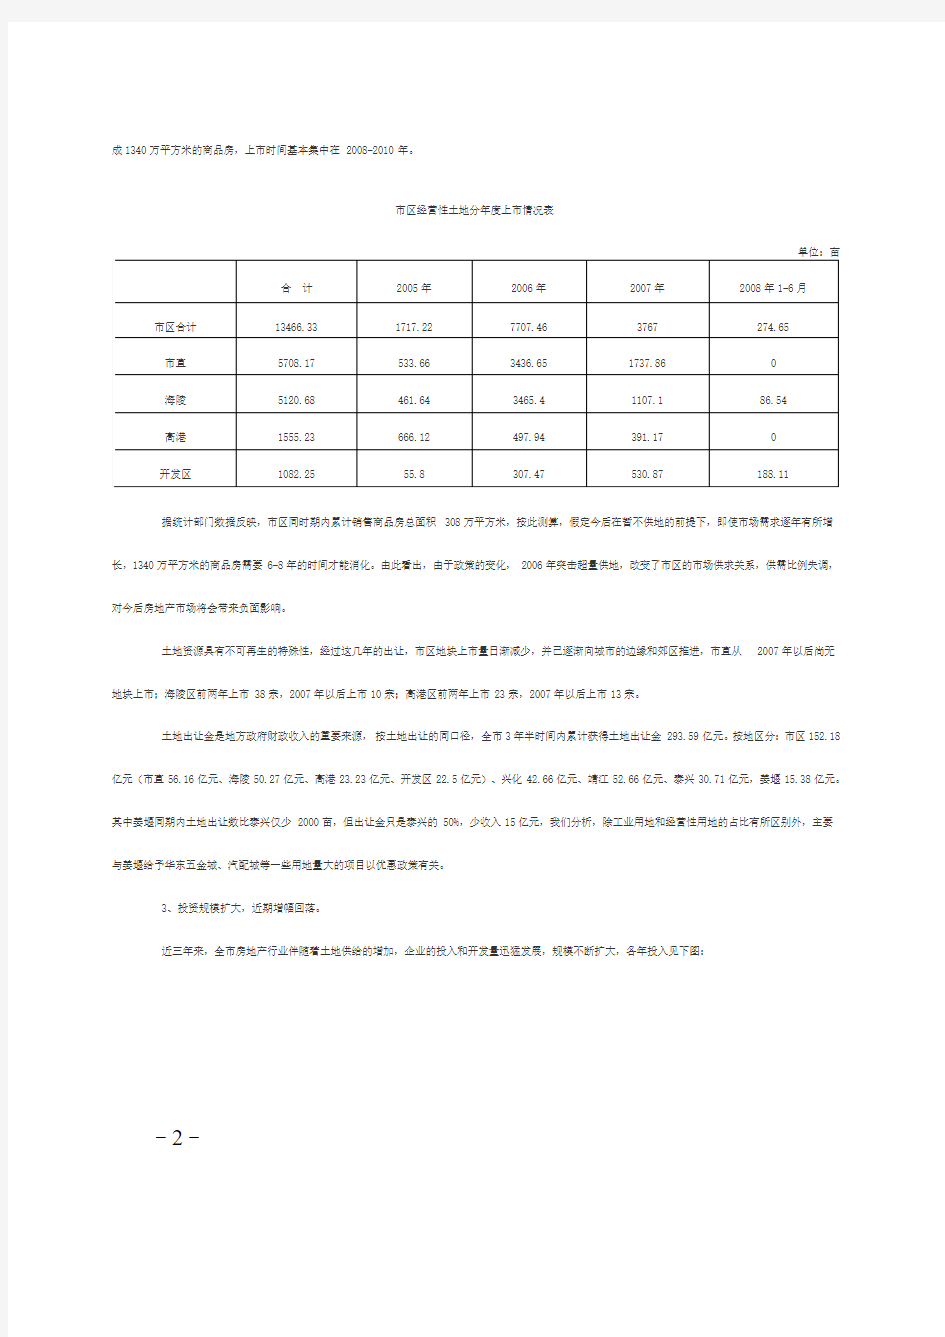 泰州市房地产发展情况调研报告224859159